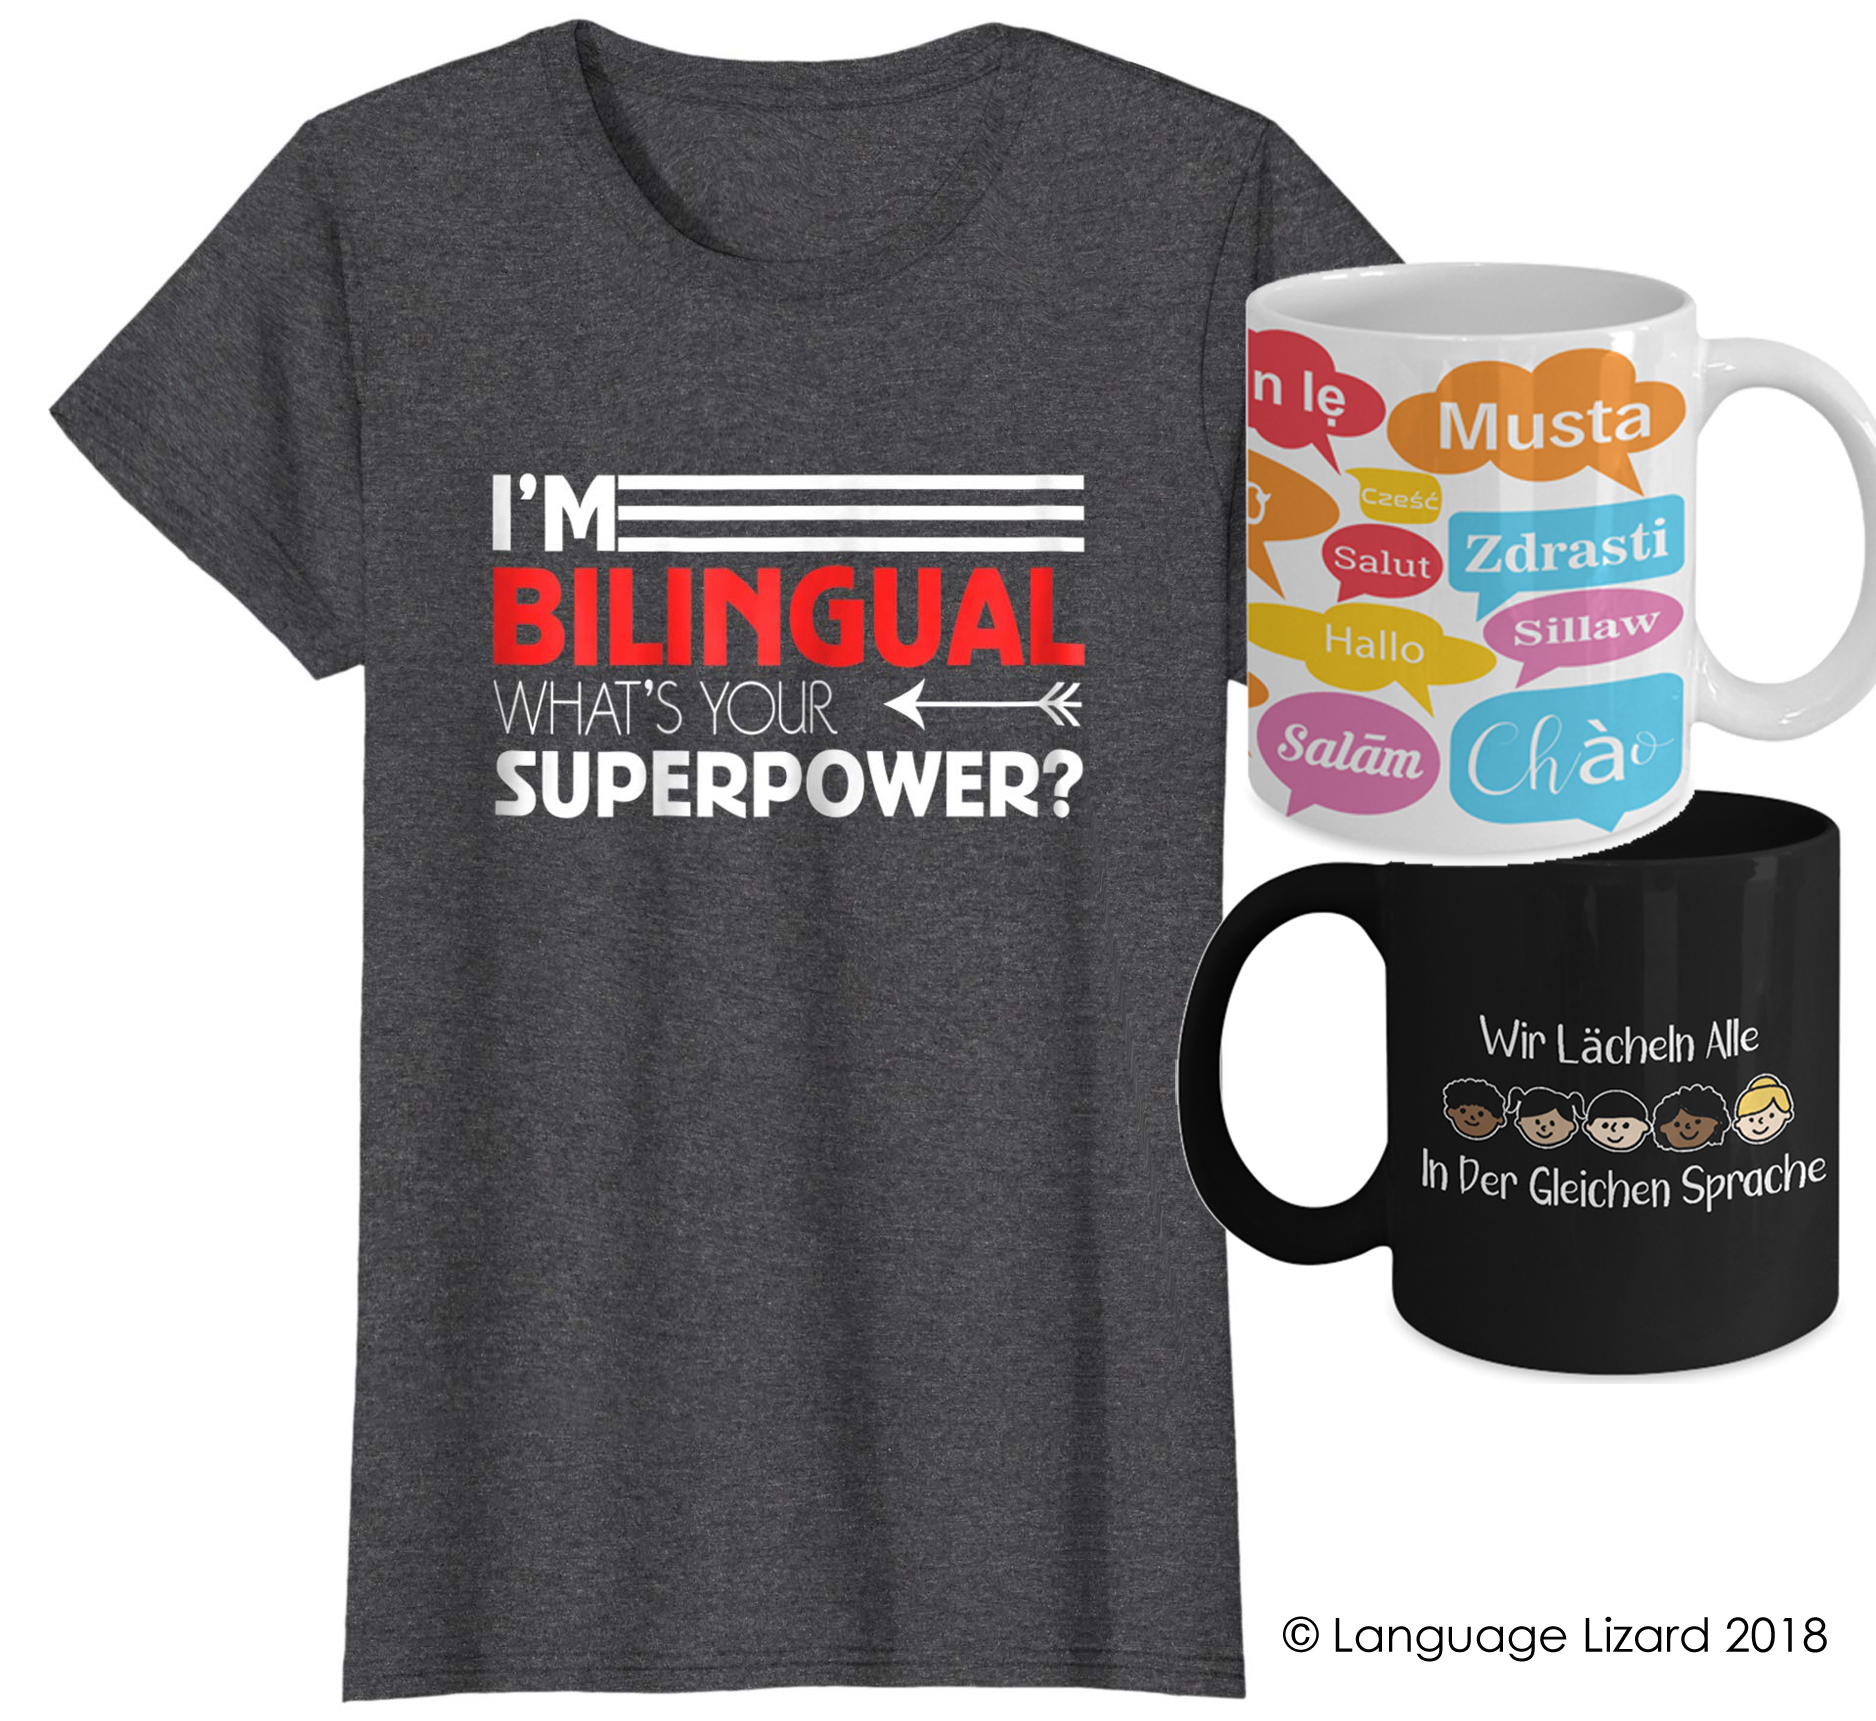 bilingual shirts and mugs